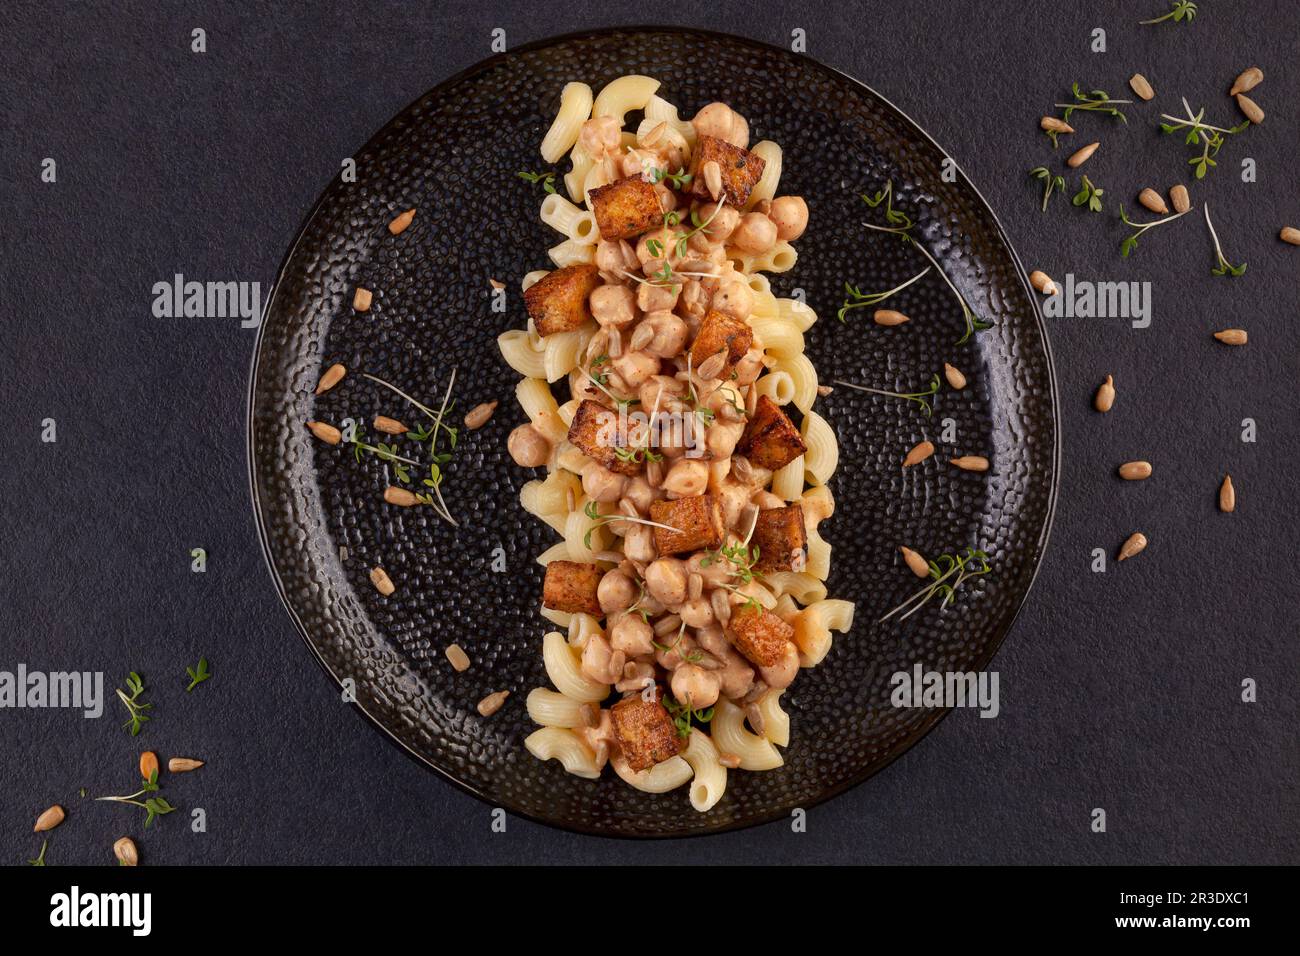 Leckere Pasta mit Kichererbsen, Tofu und frischen Kräutern auf dunklem Hintergrund von oben. Stockfoto